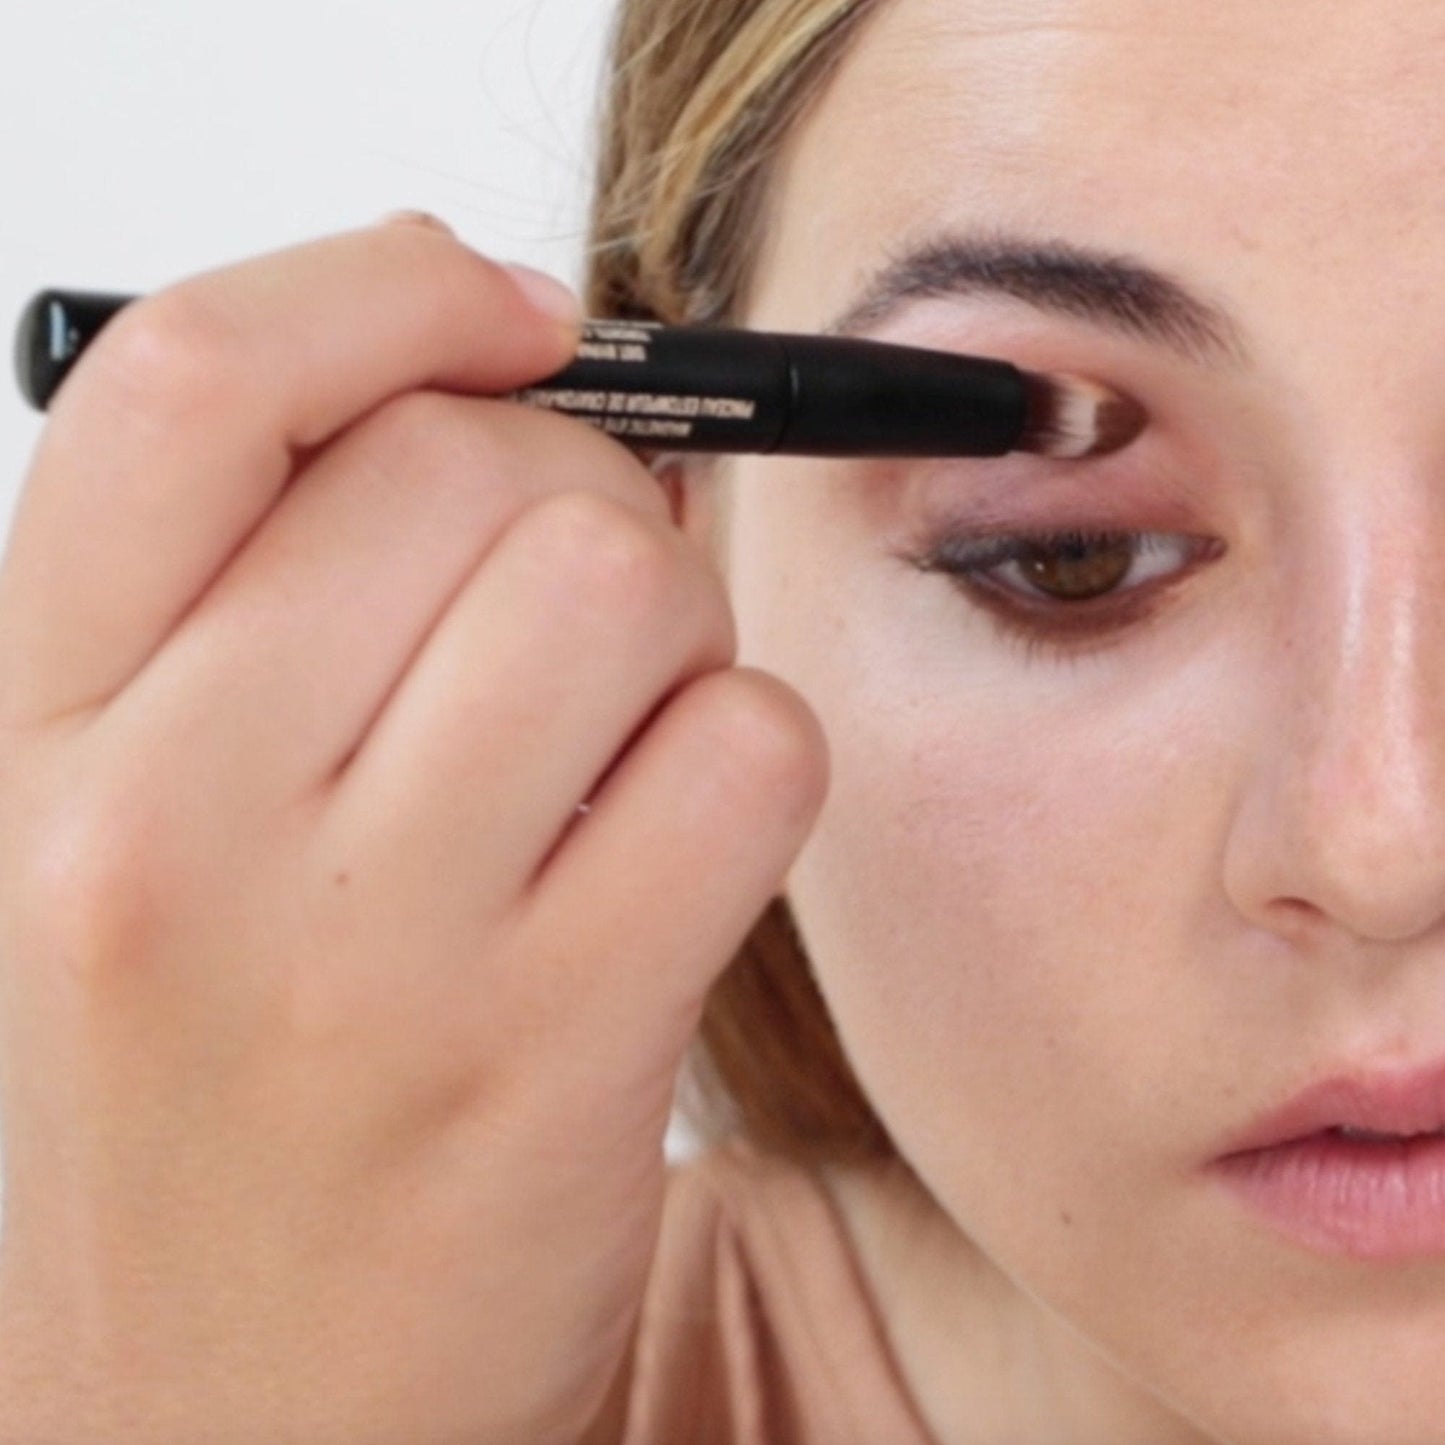 Pencil Blenders - Makeup Brush Set